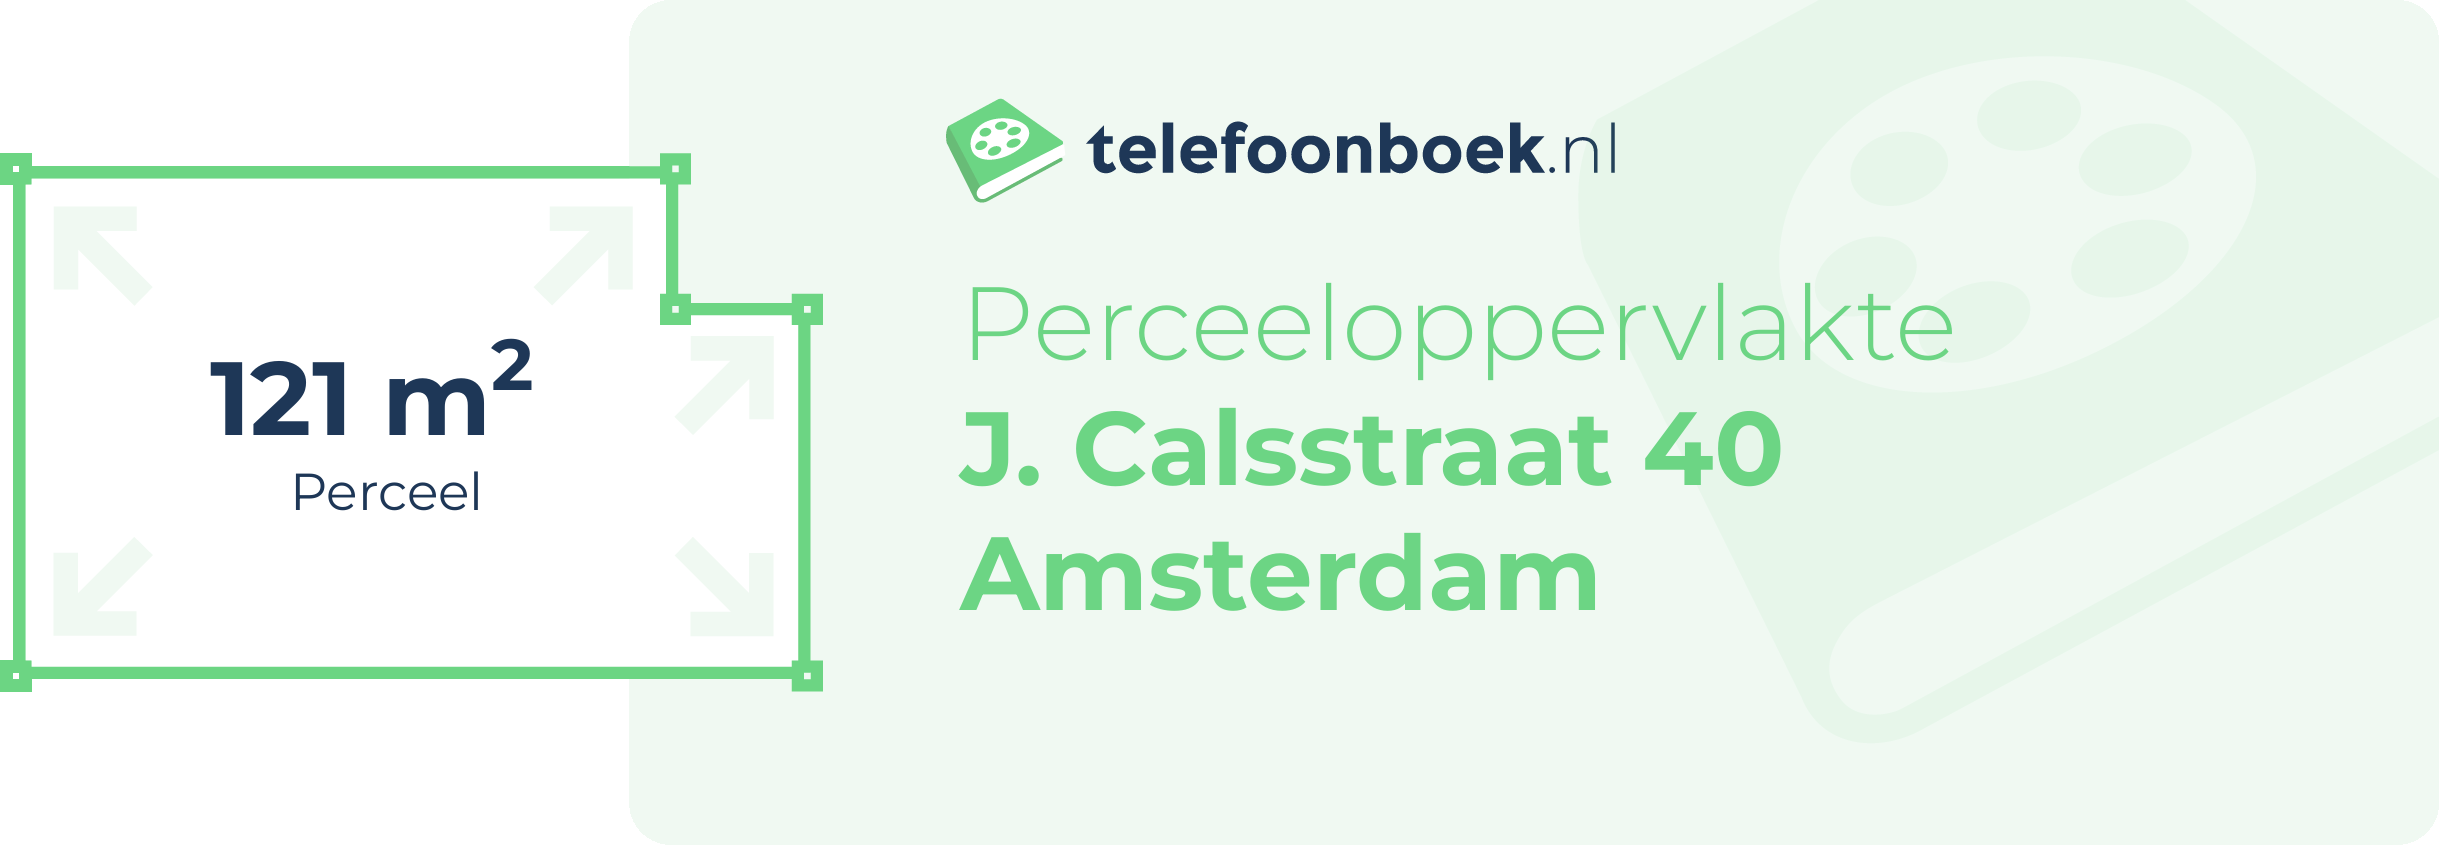 Perceeloppervlakte J. Calsstraat 40 Amsterdam